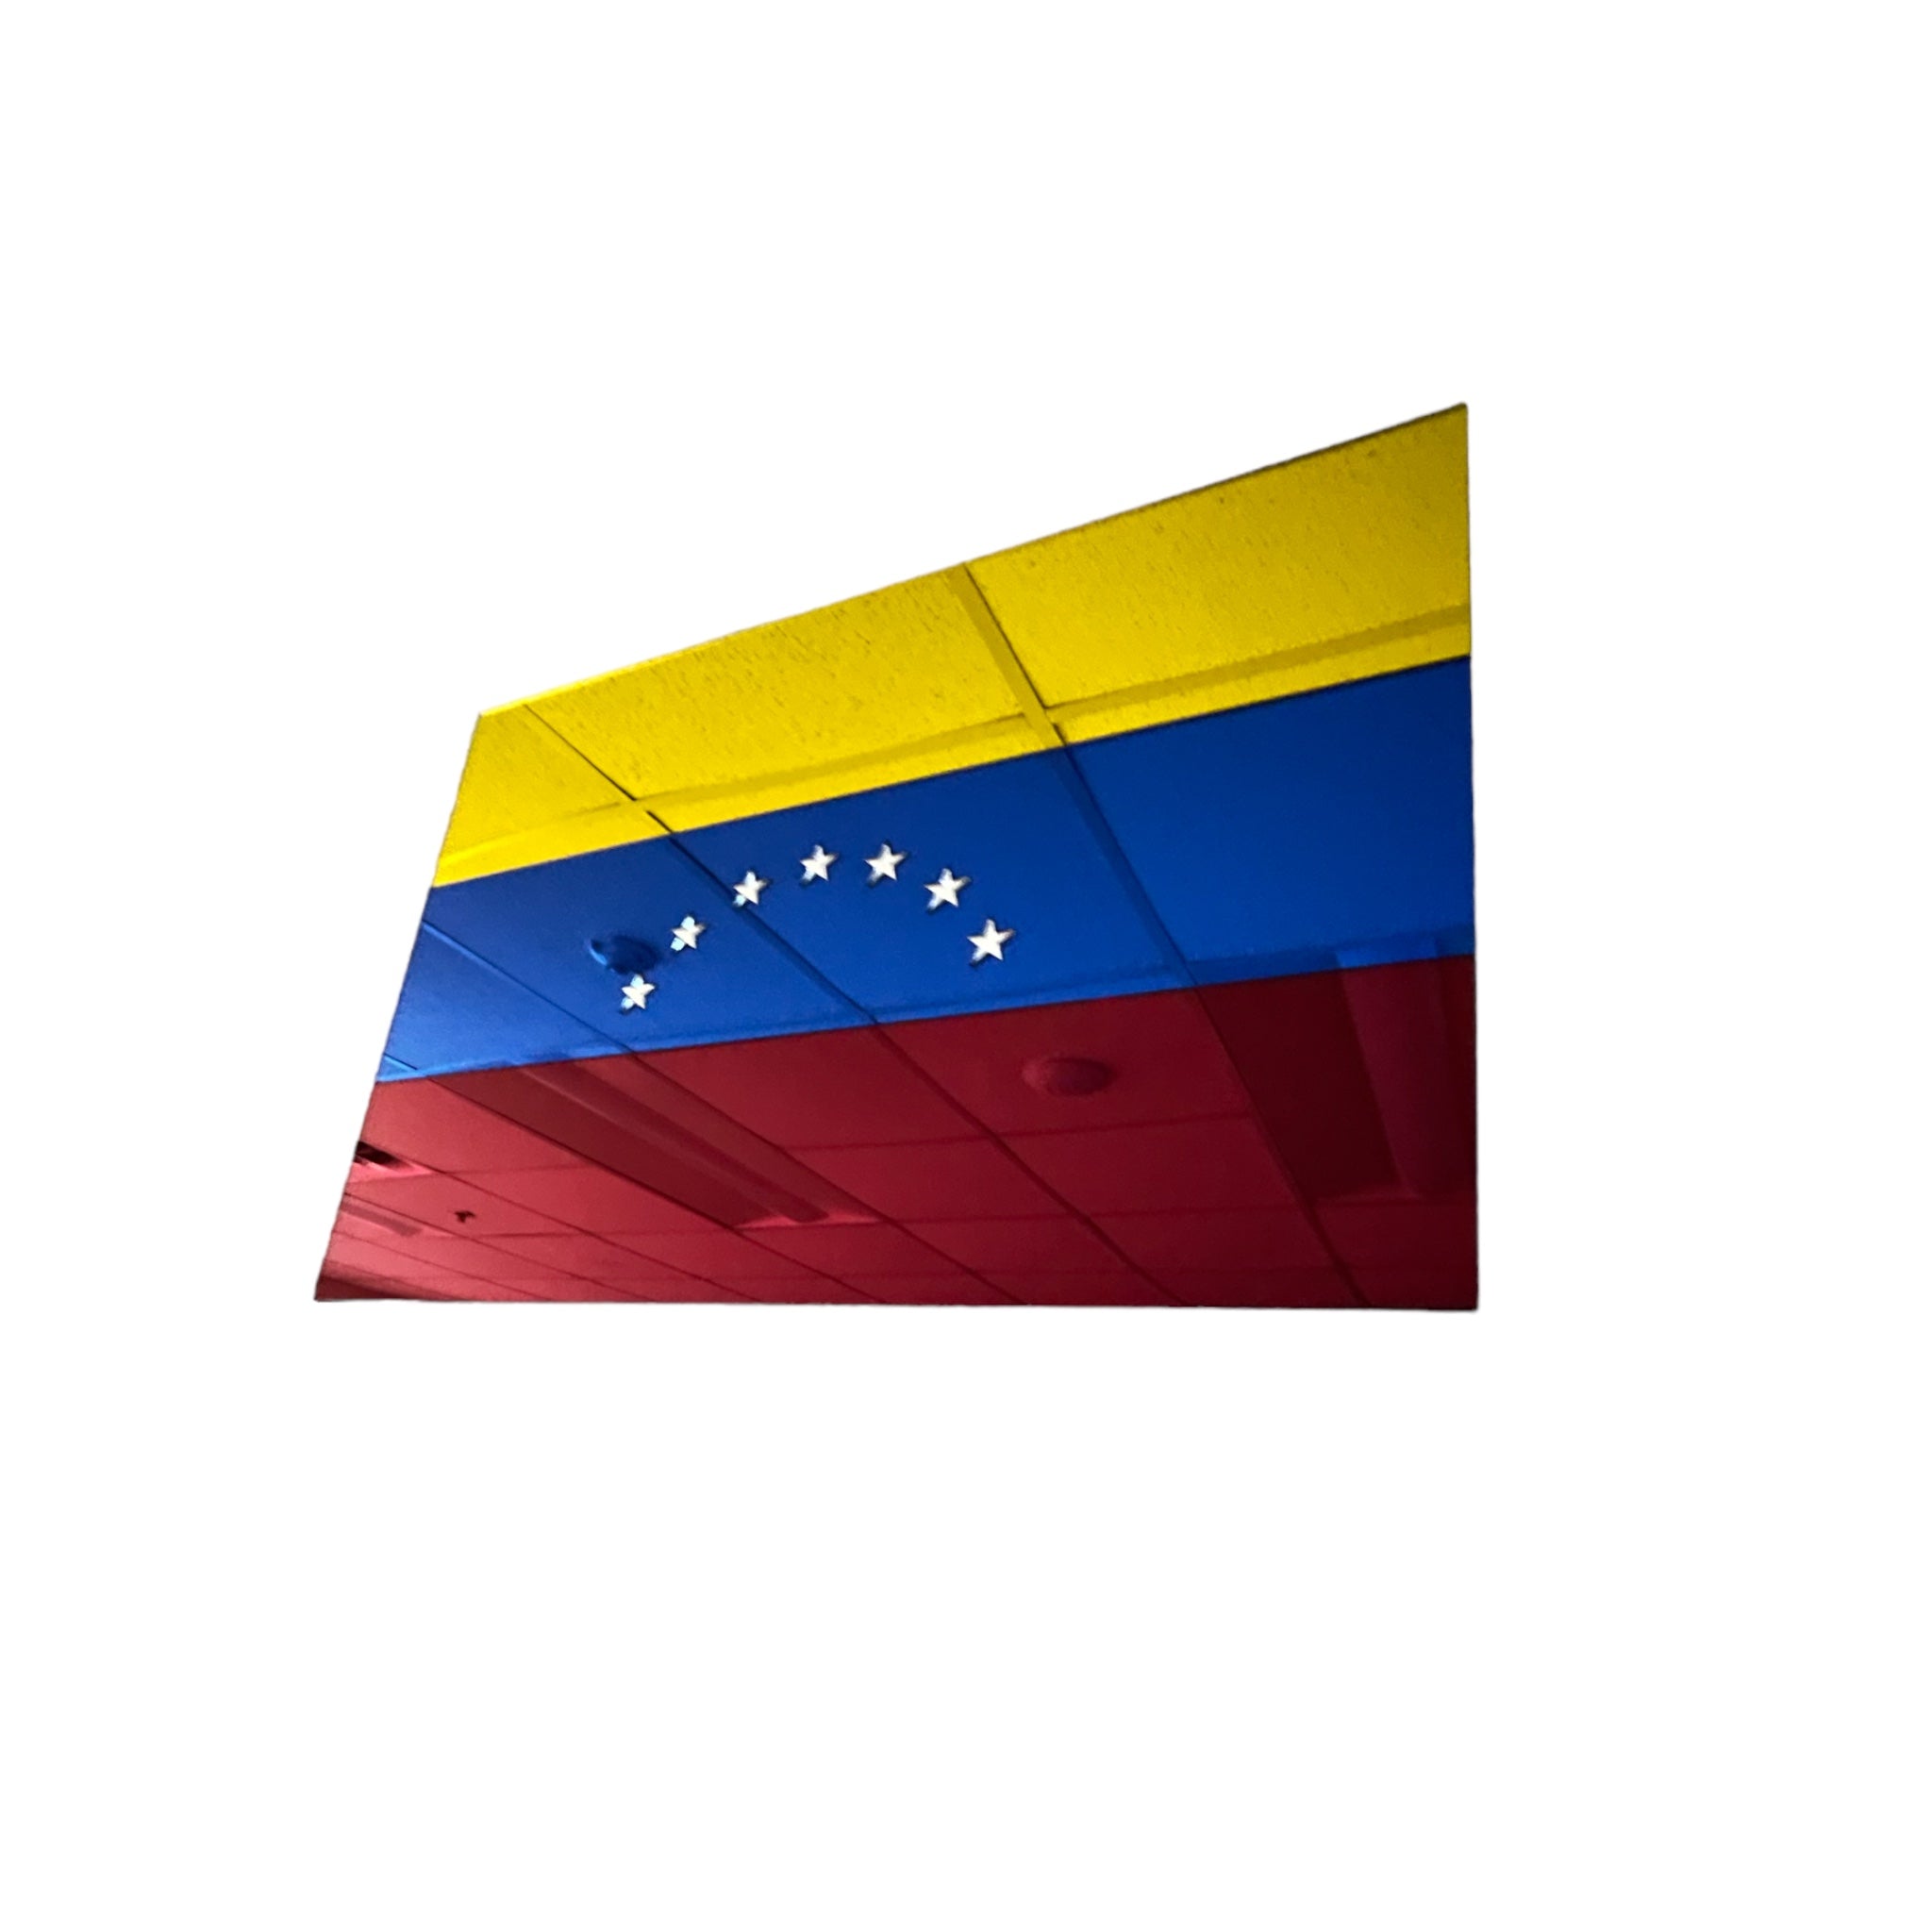 VENEZUELA FLAG MIRROR ACRYLIC MULTILAYER